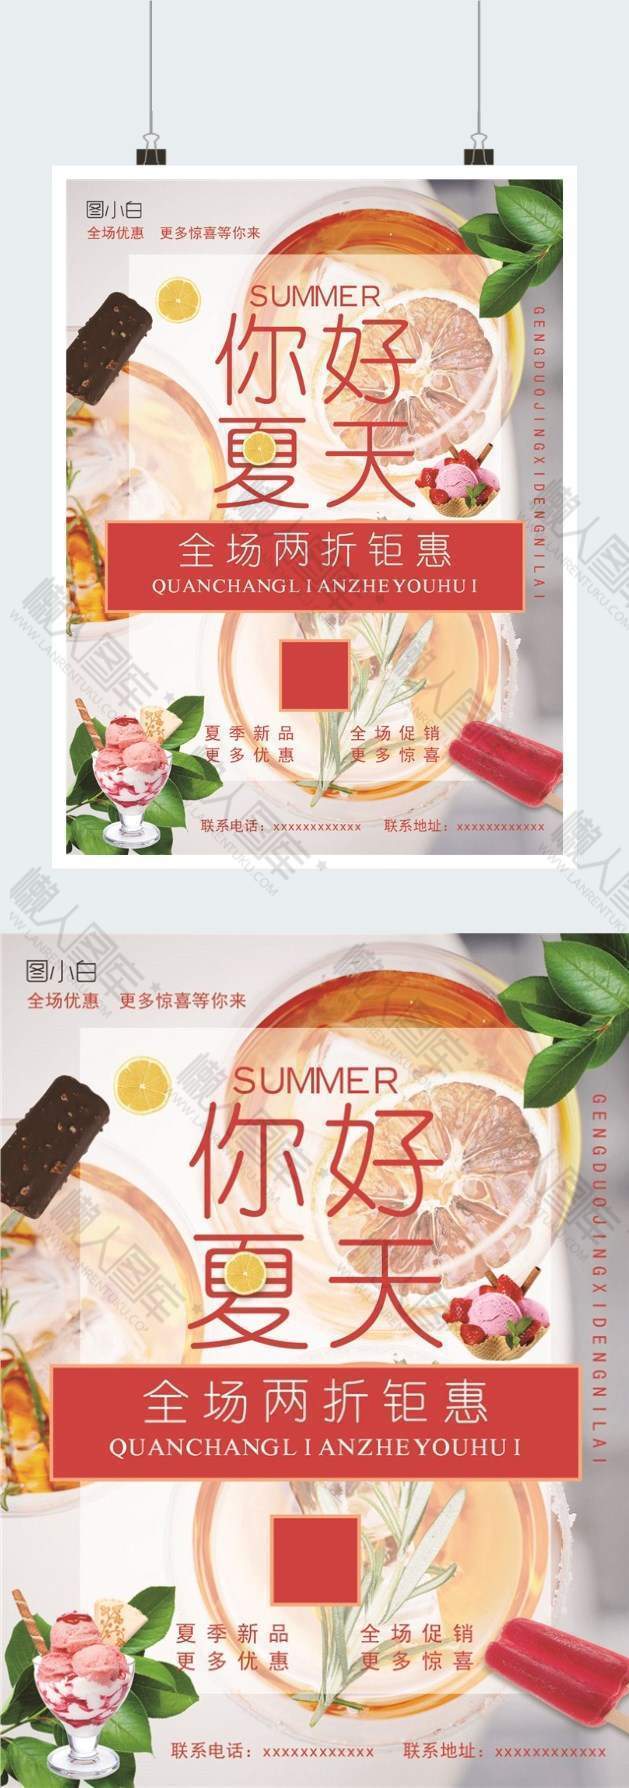 夏季饮品宣传促销广告平面海报